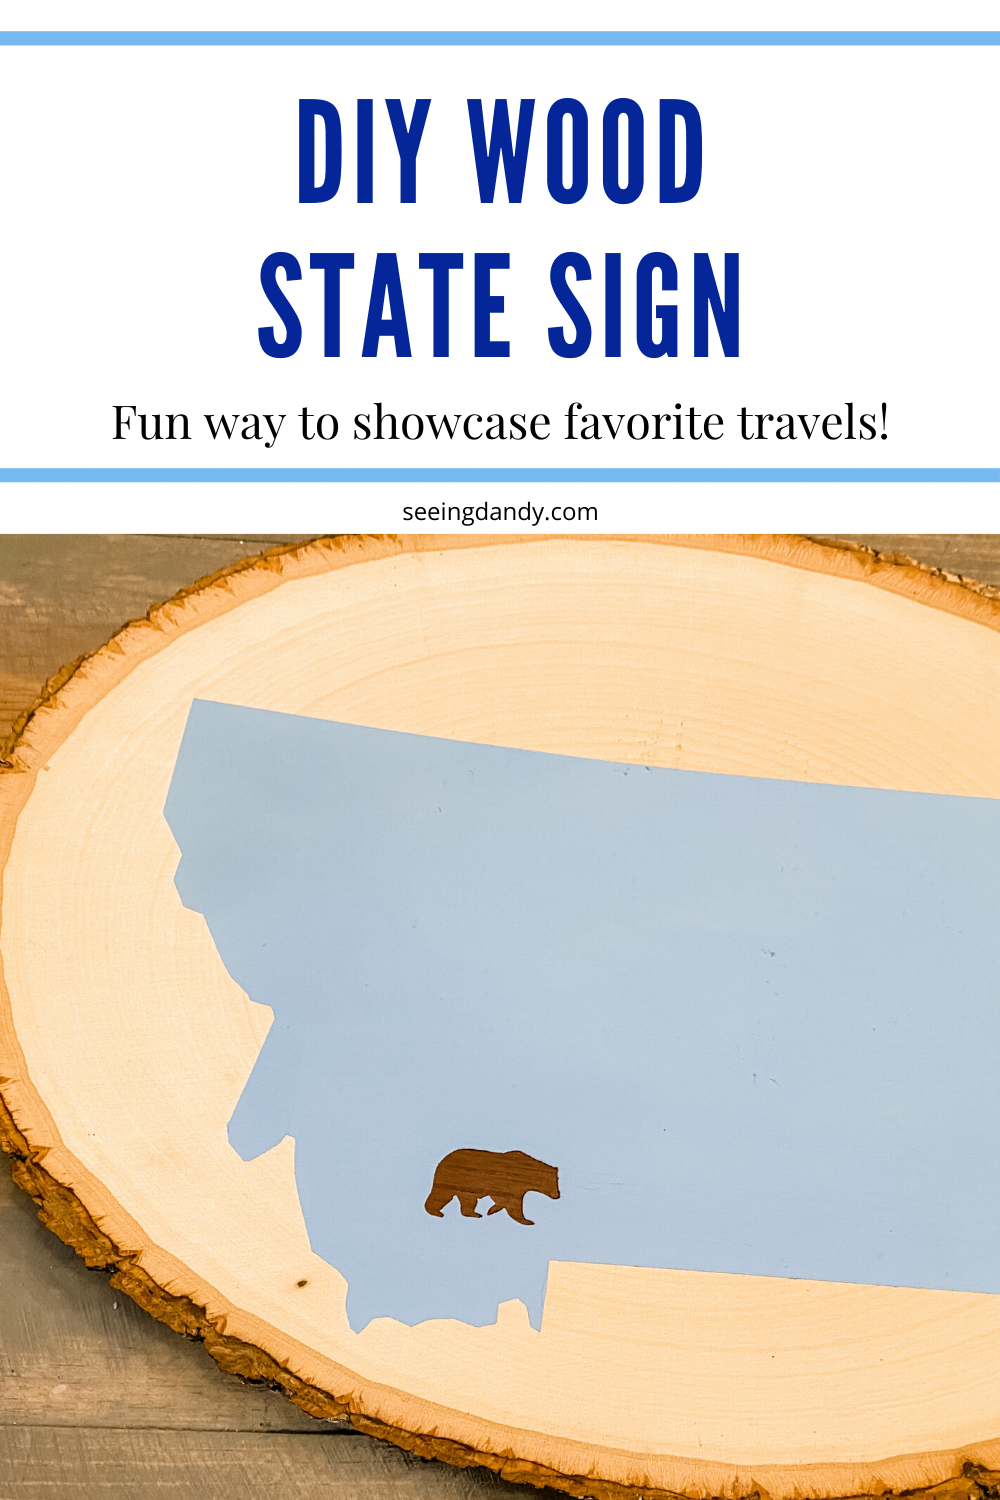 DIY wood slice state sign favorite travel destinations